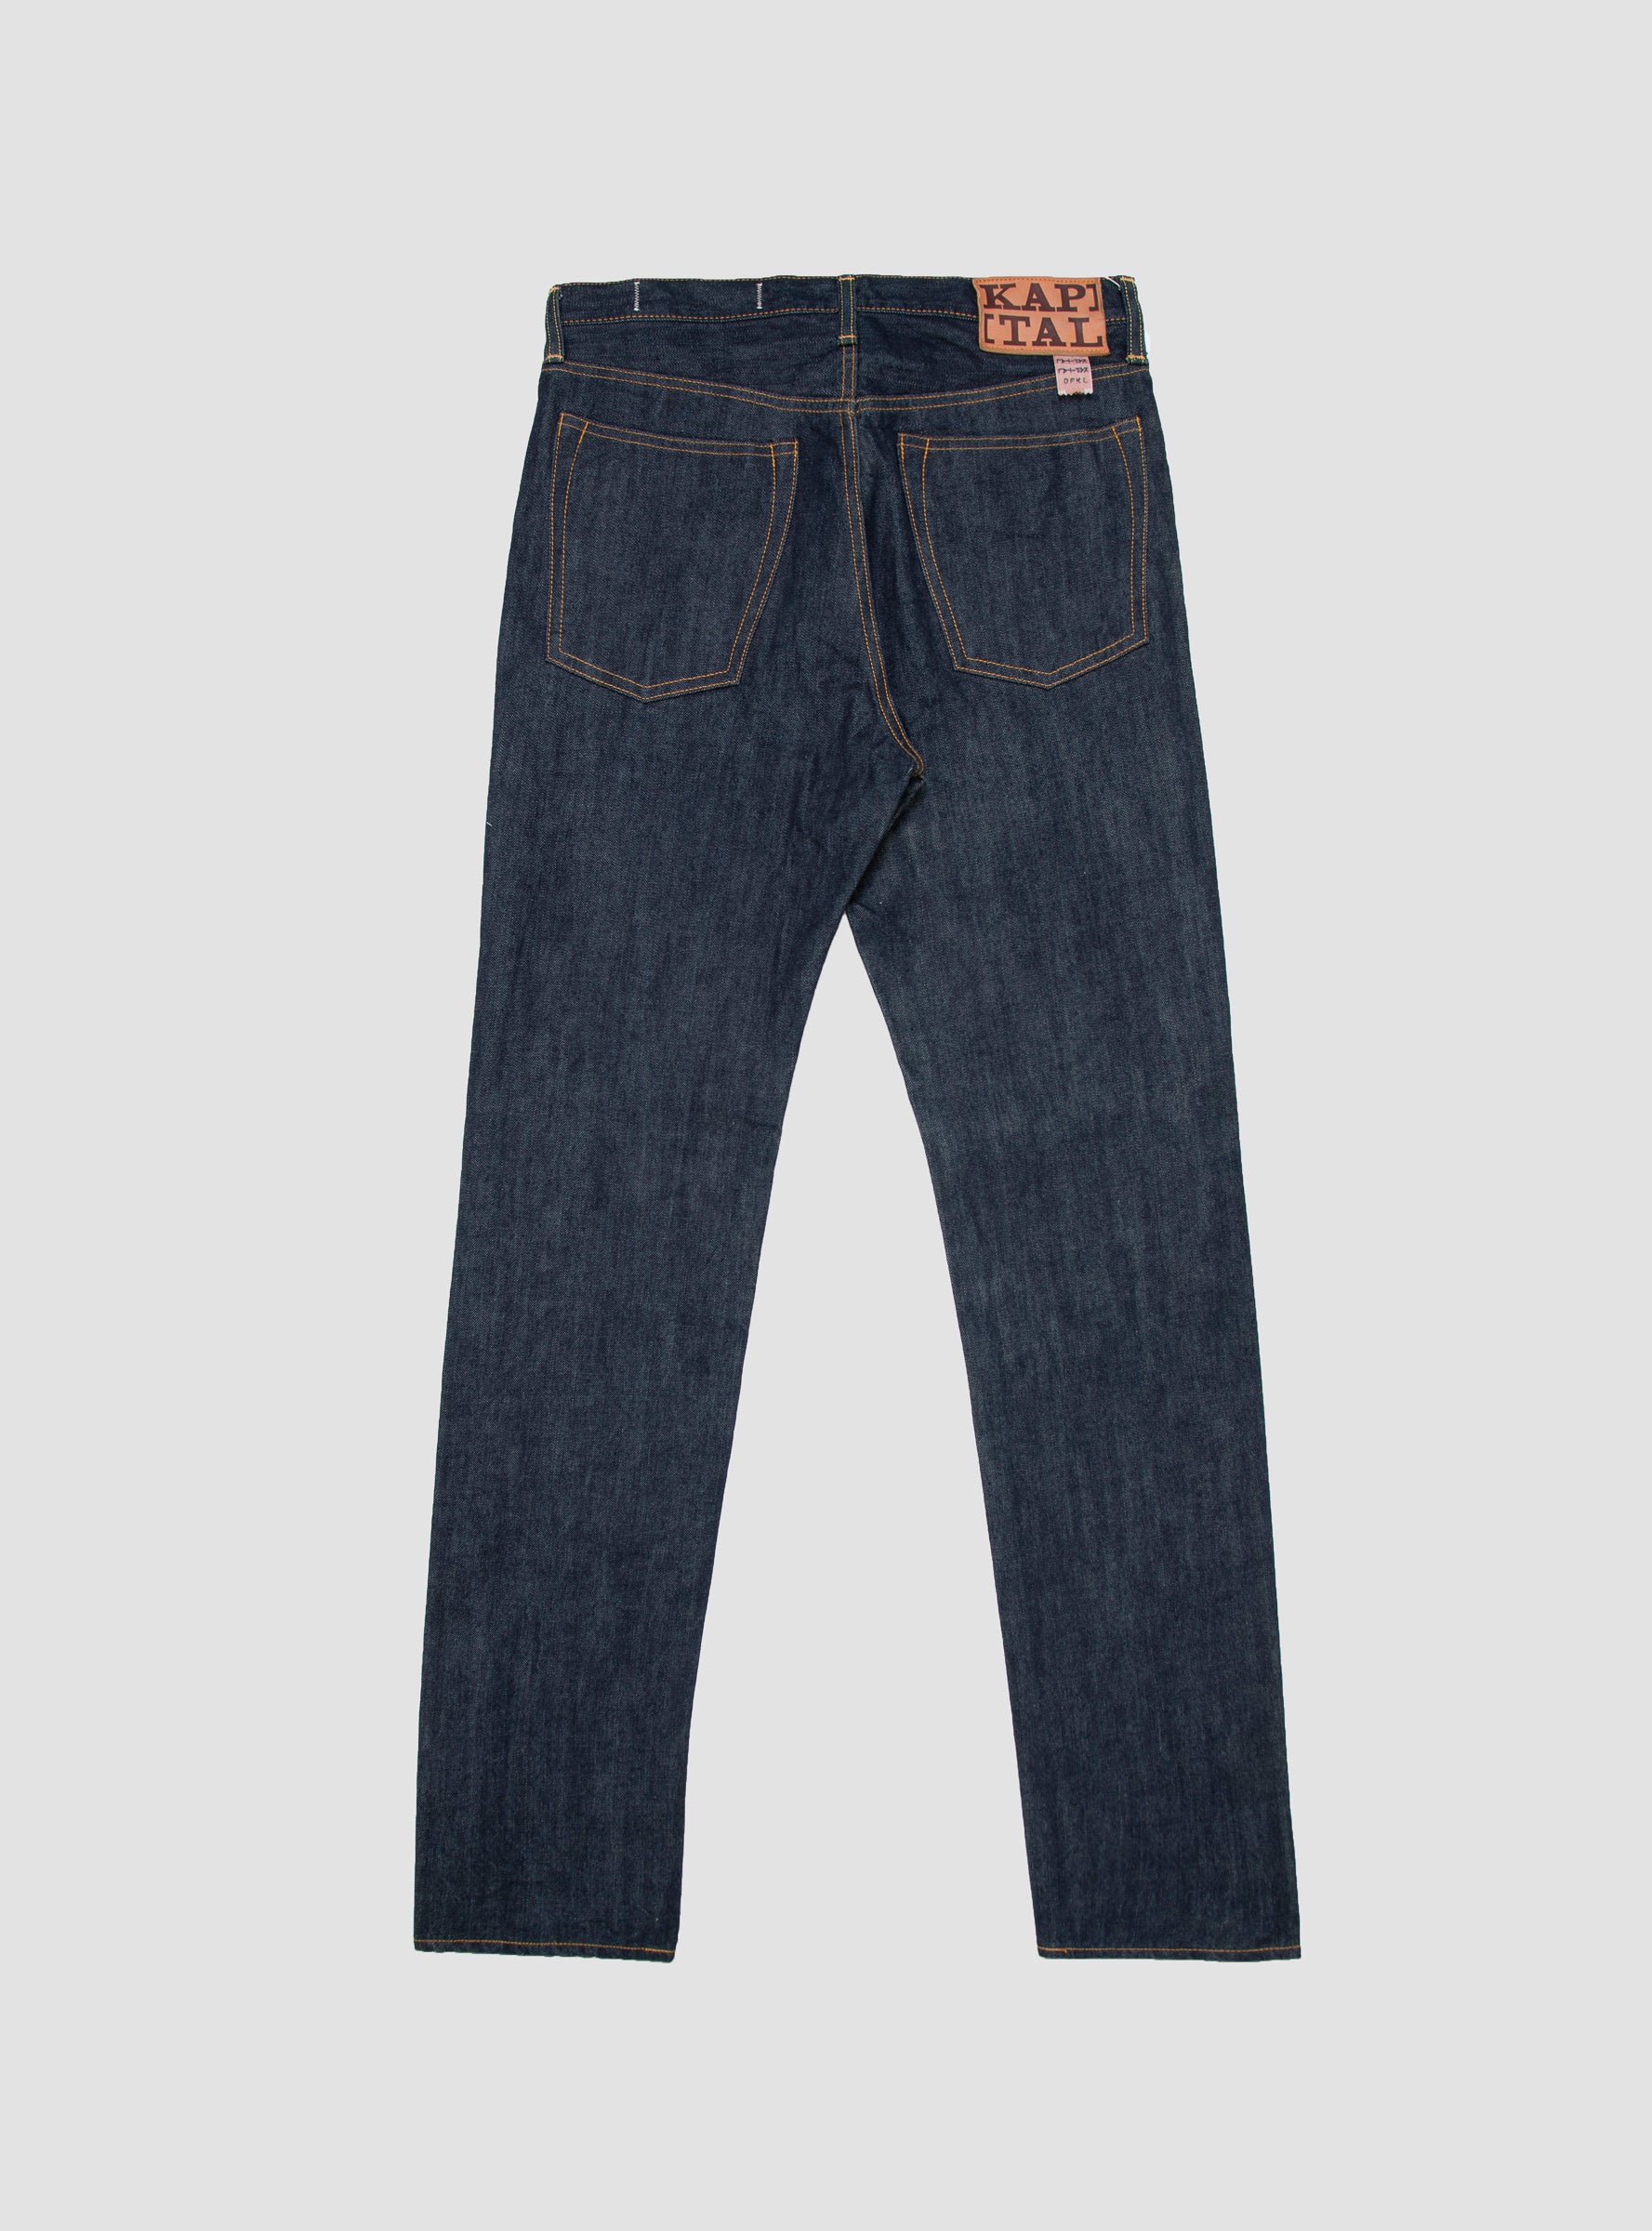  Kapital 14oz Denim 5 Pocket Stone M's Jeans - Size: W32